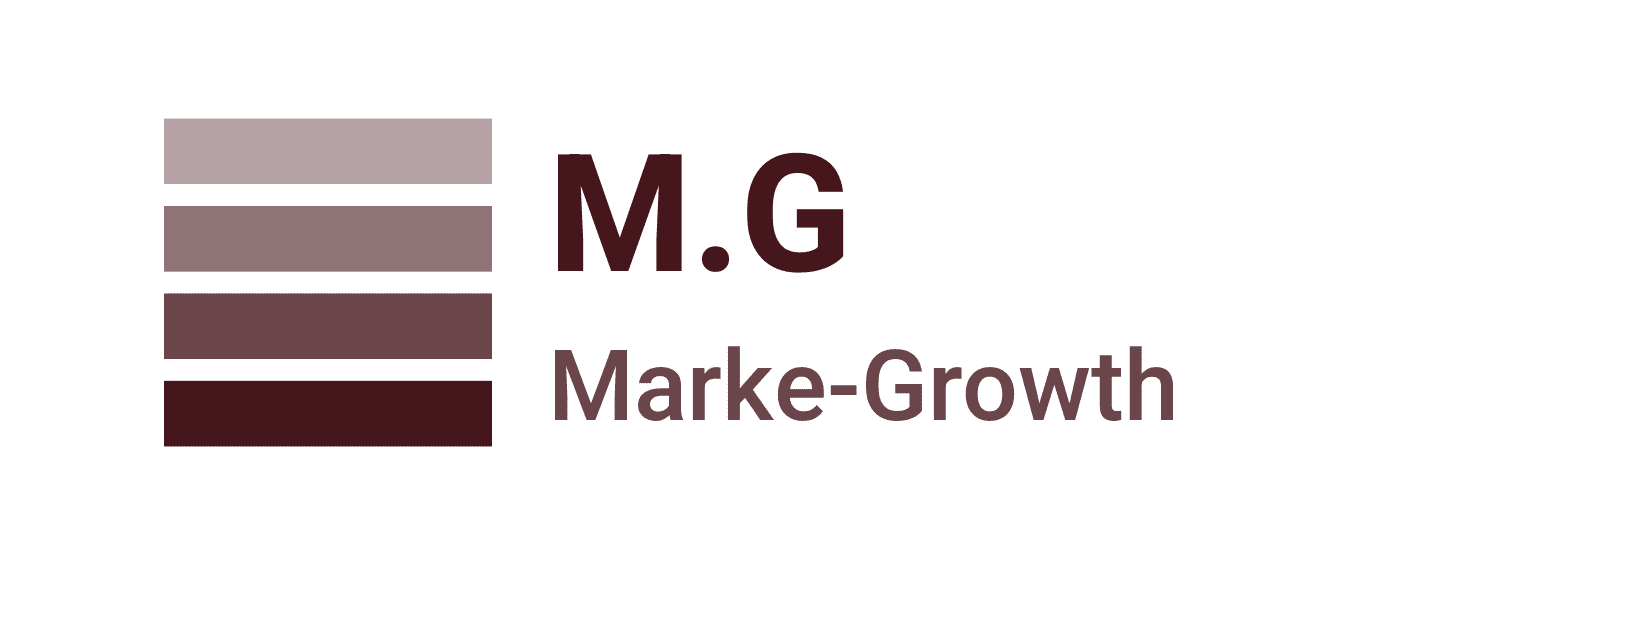 マーケ・グロース -Marke Growth-